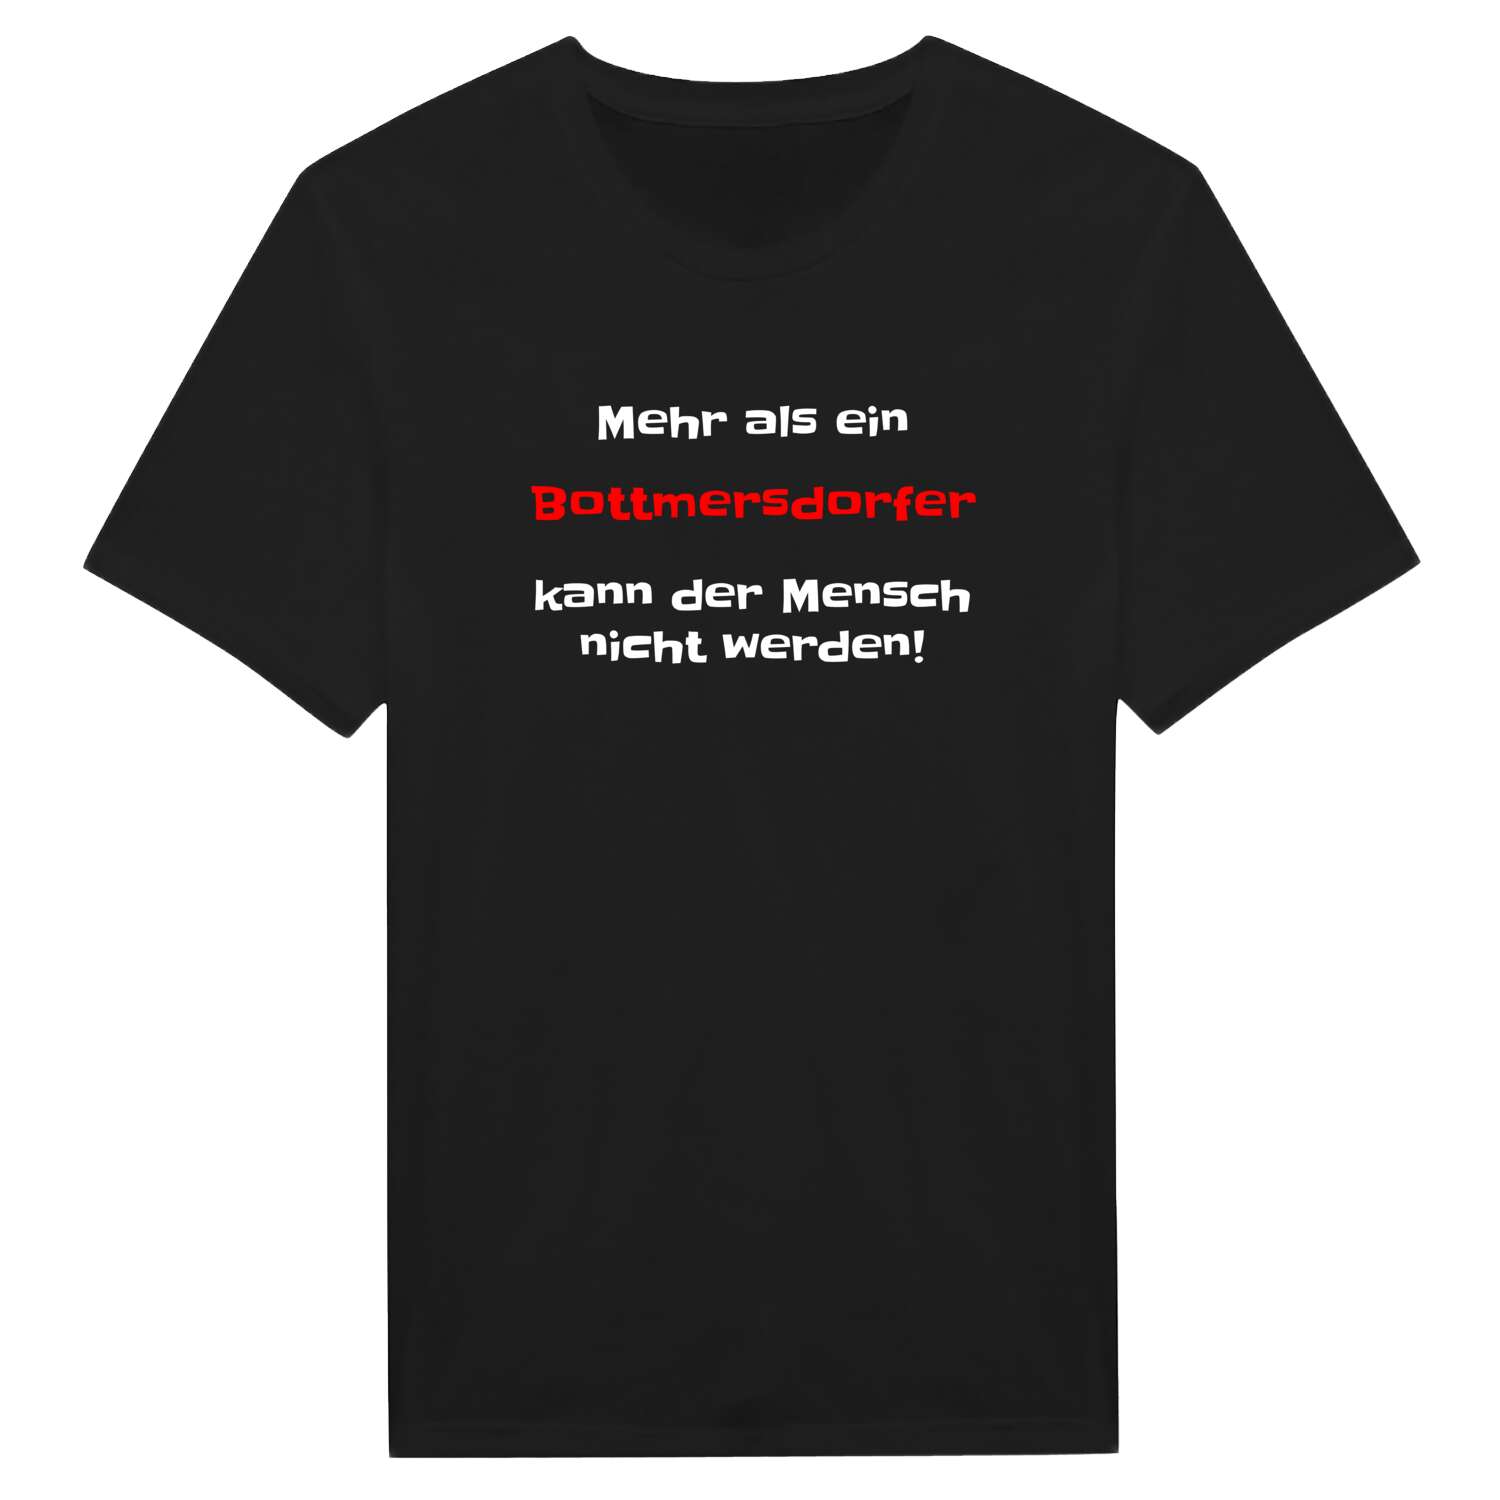 Bottmersdorf T-Shirt »Mehr als ein«